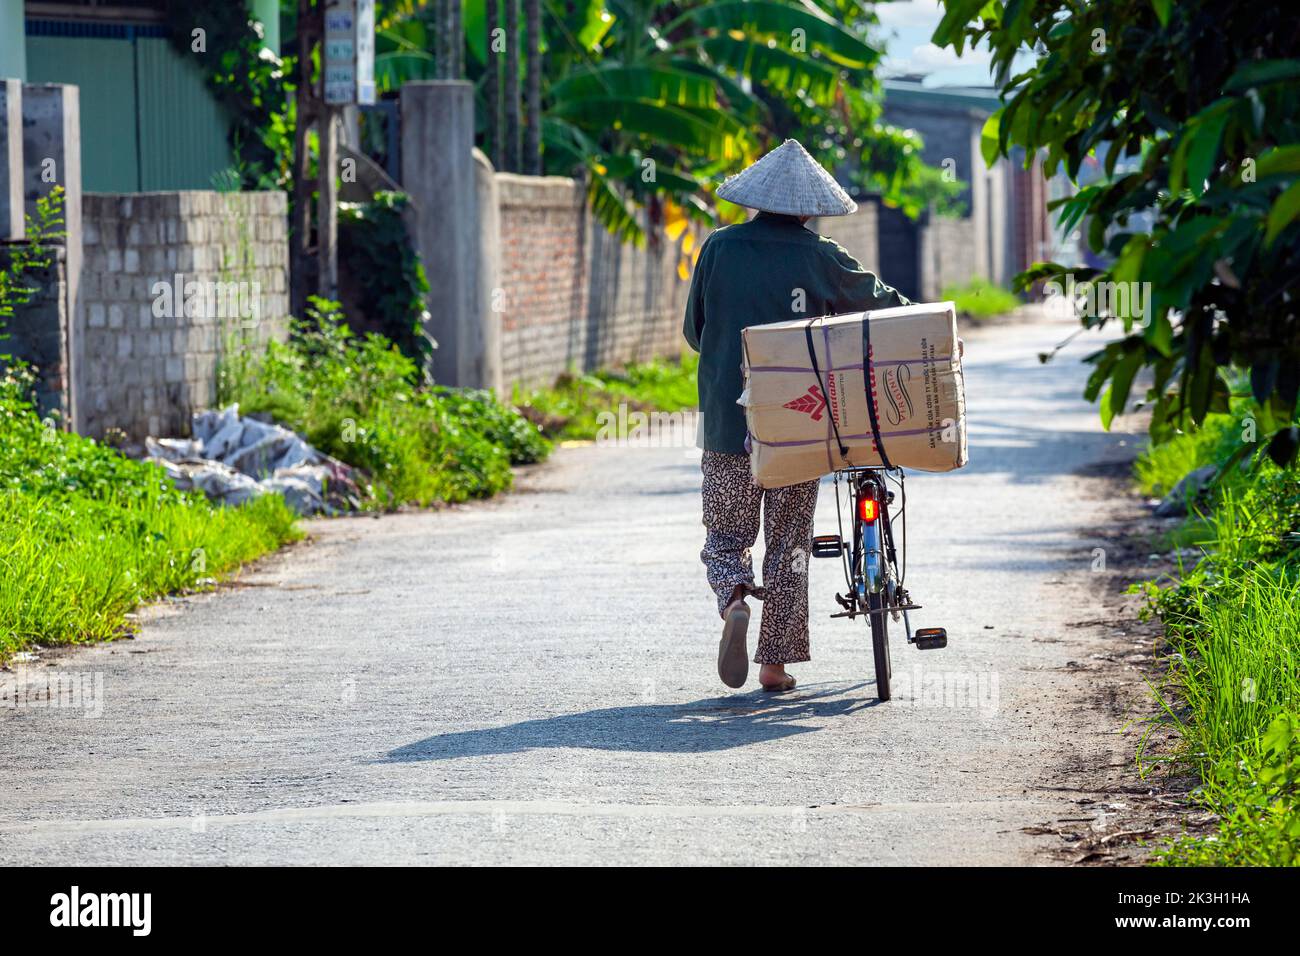 Vietnamese man with bamboo hat pushing bicycle through rural Hoang Mai Mountain village, Hai Phong, Vietnam Stock Photo